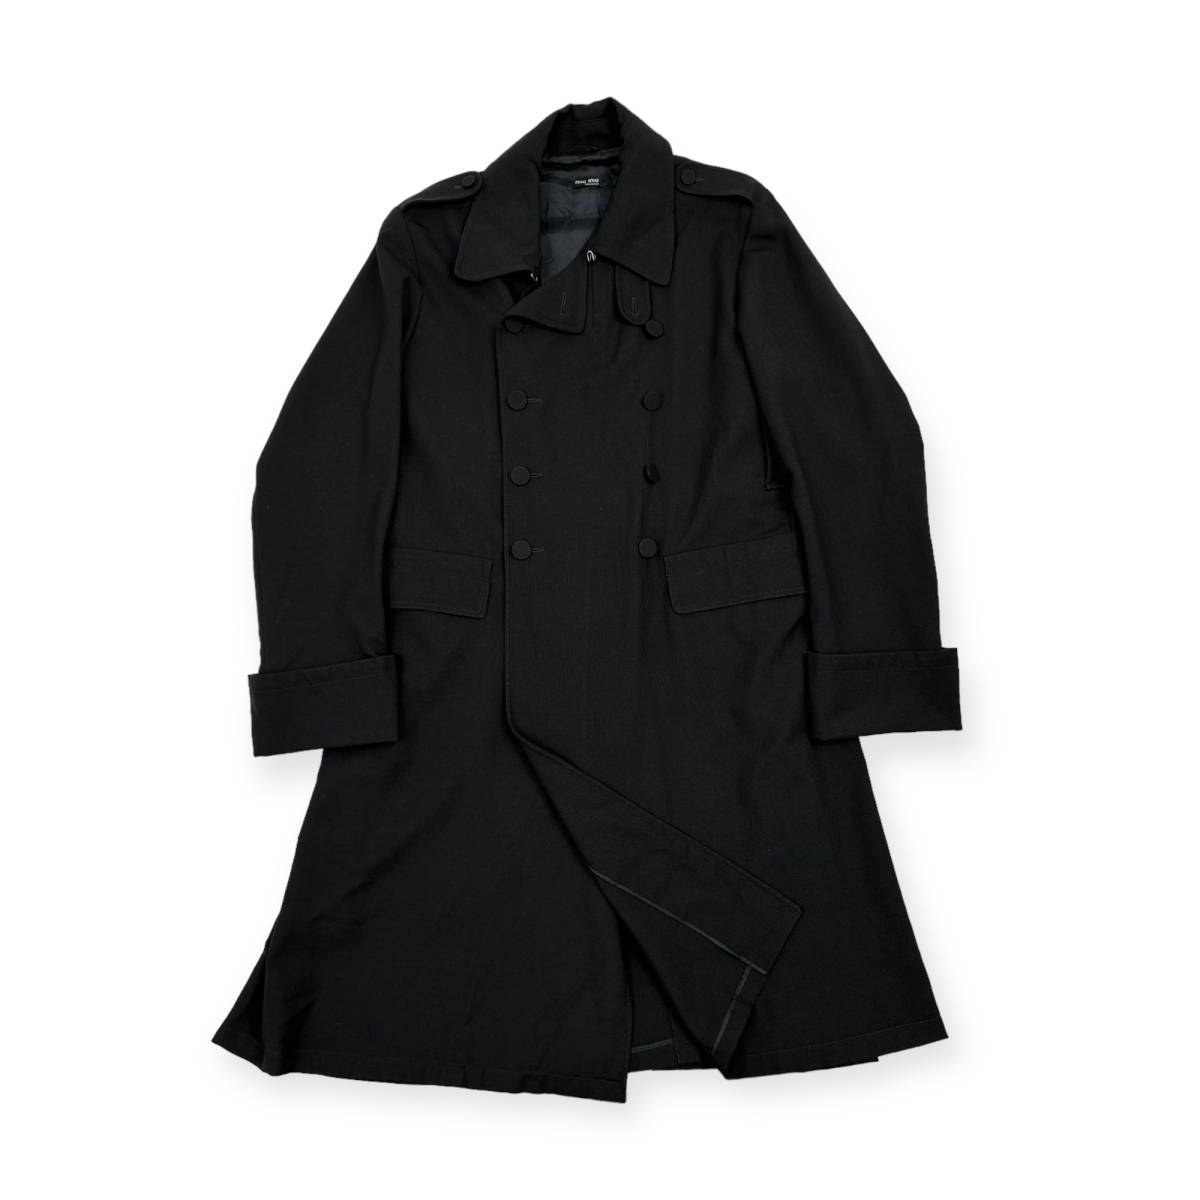 miumiu ミュウミュウ ダブル ロング コート サイズ 48 /黒 ブラック ミリタリー ジャケット エポーレット /男女でも